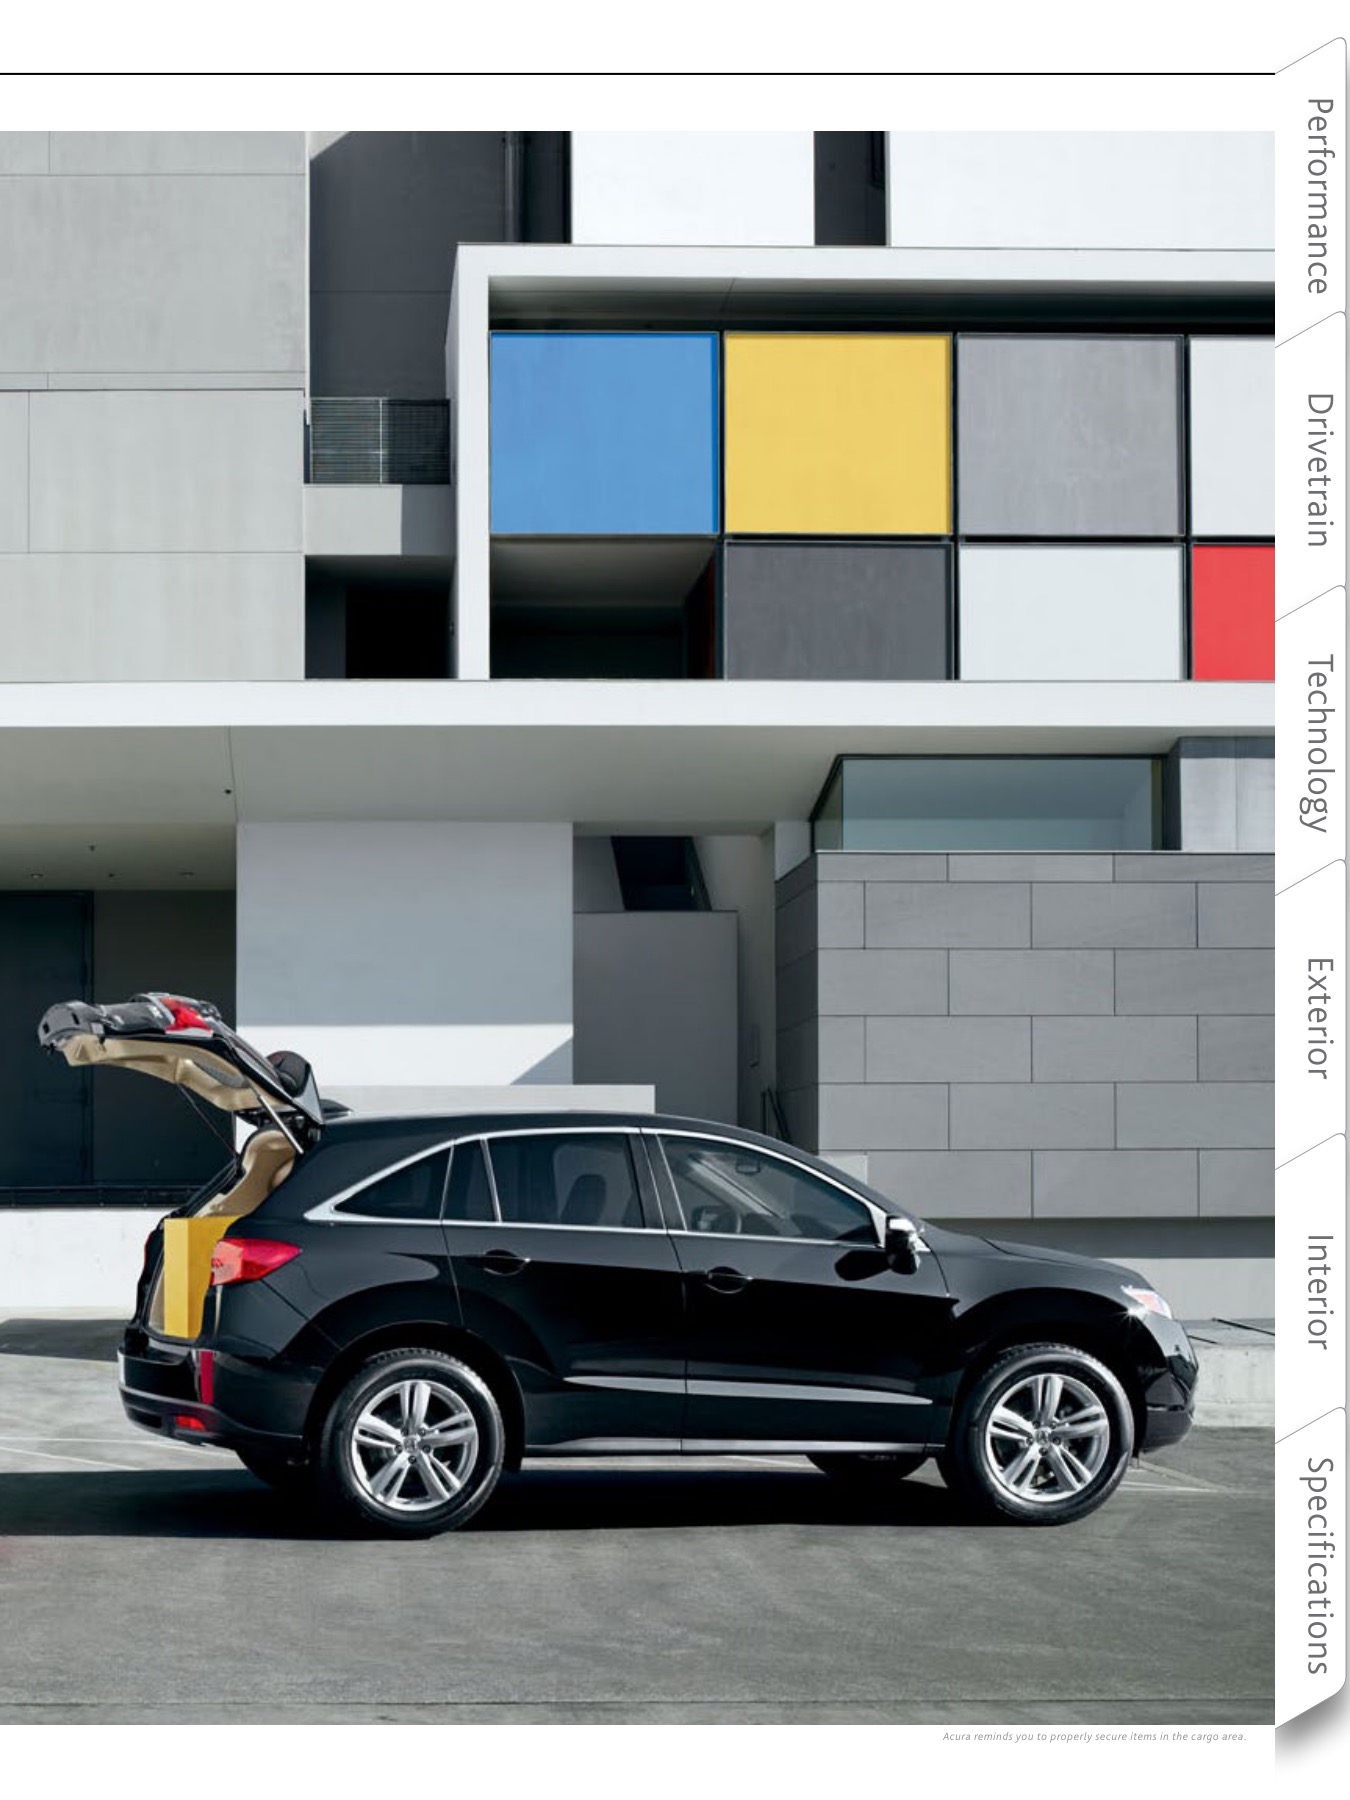 2015 Acura RDX Brochure Page 9